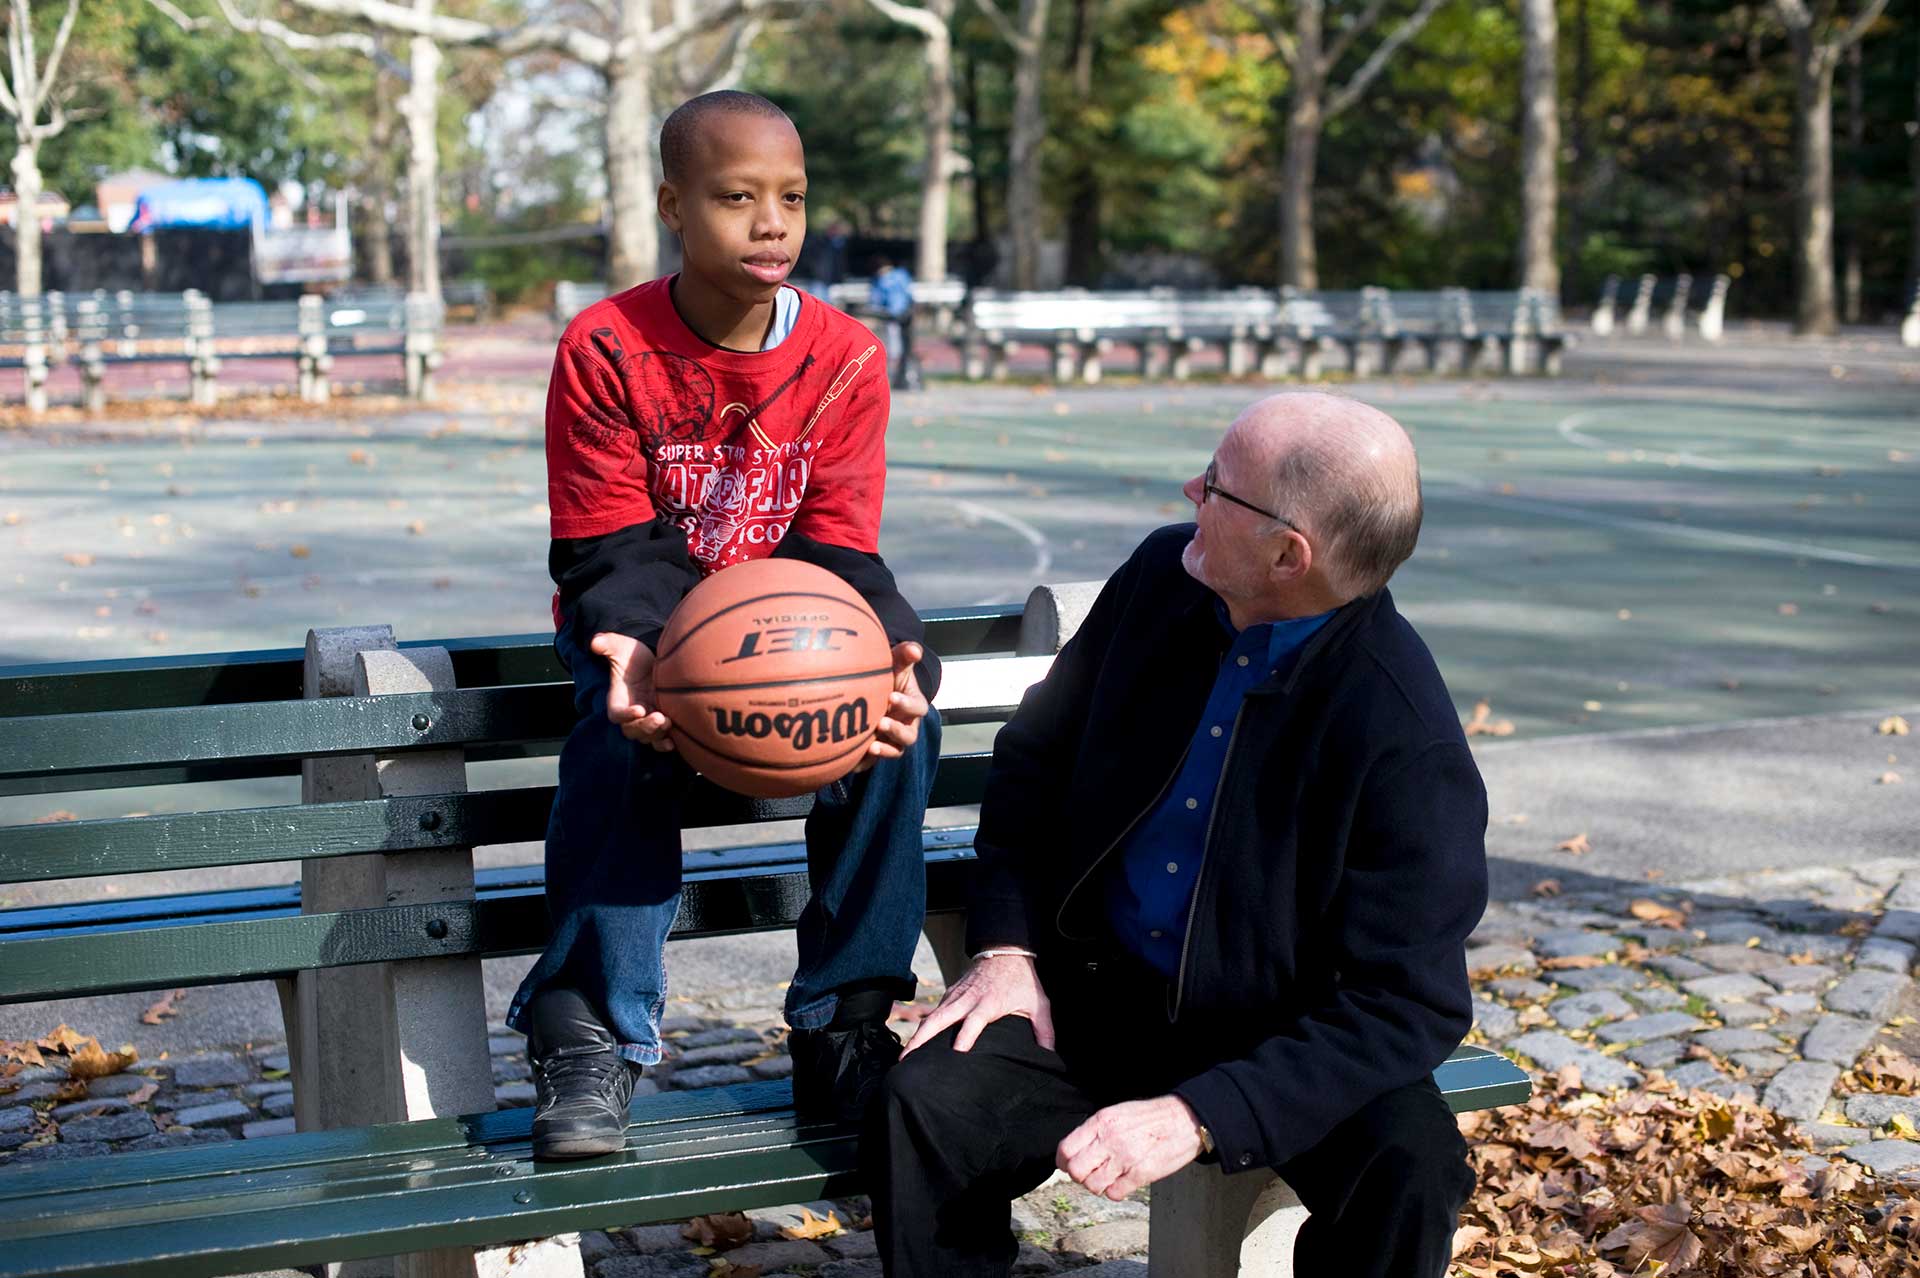 boy mentor mentee park bench 55+ basketball